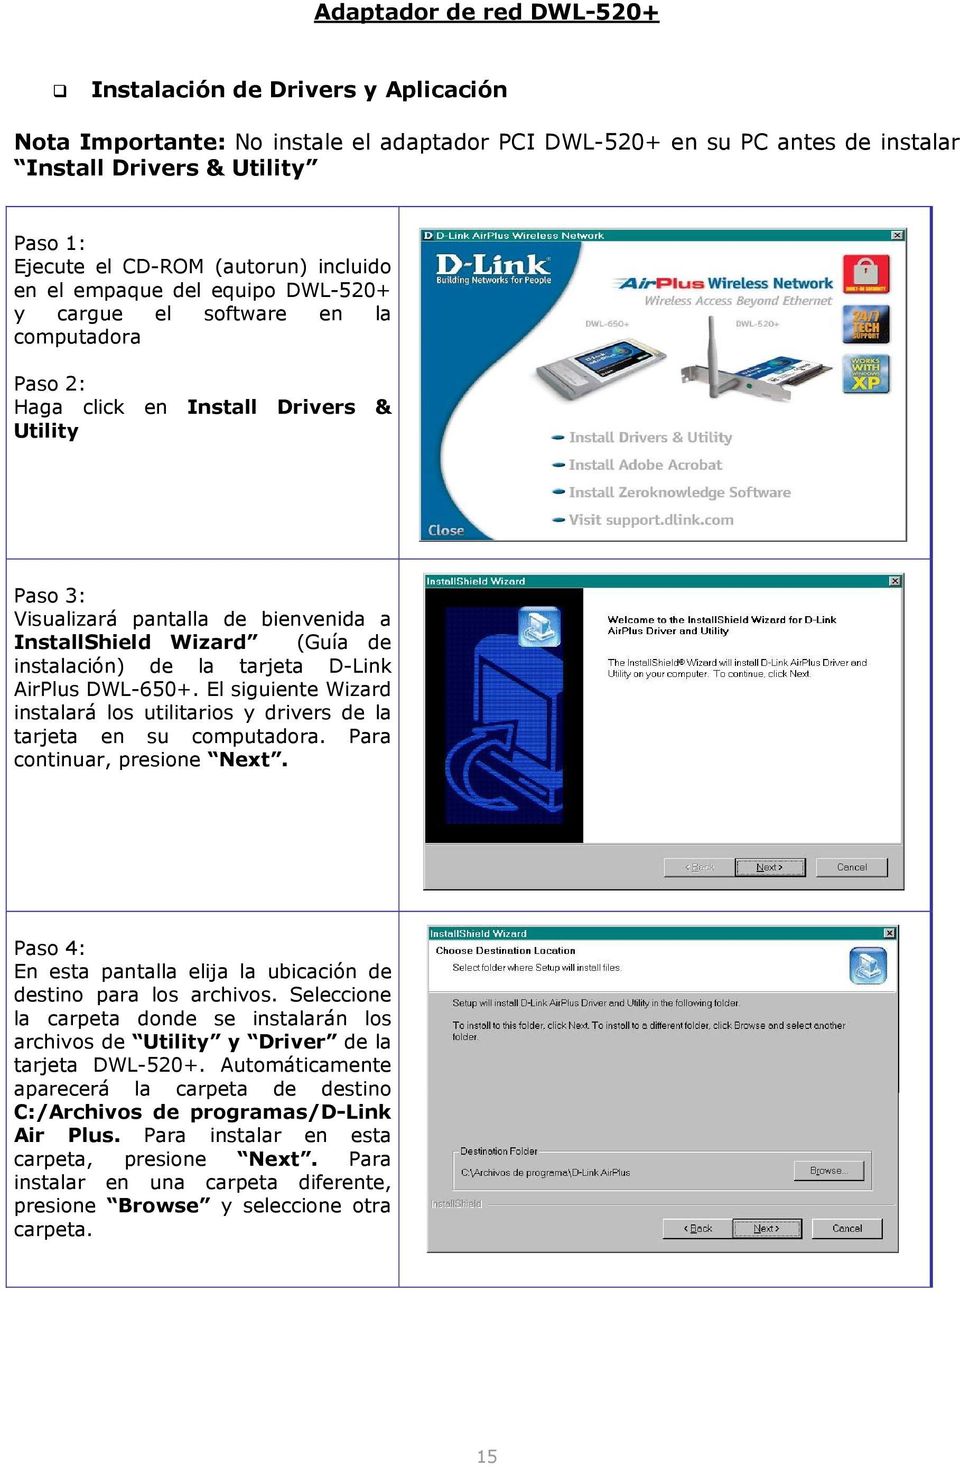 Wizard (Guía de instalación) de la tarjeta D-Link AirPlus DWL-650+. El siguiente Wizard instalará los utilitarios y drivers de la tarjeta en su computadora. Para continuar, presione Next.